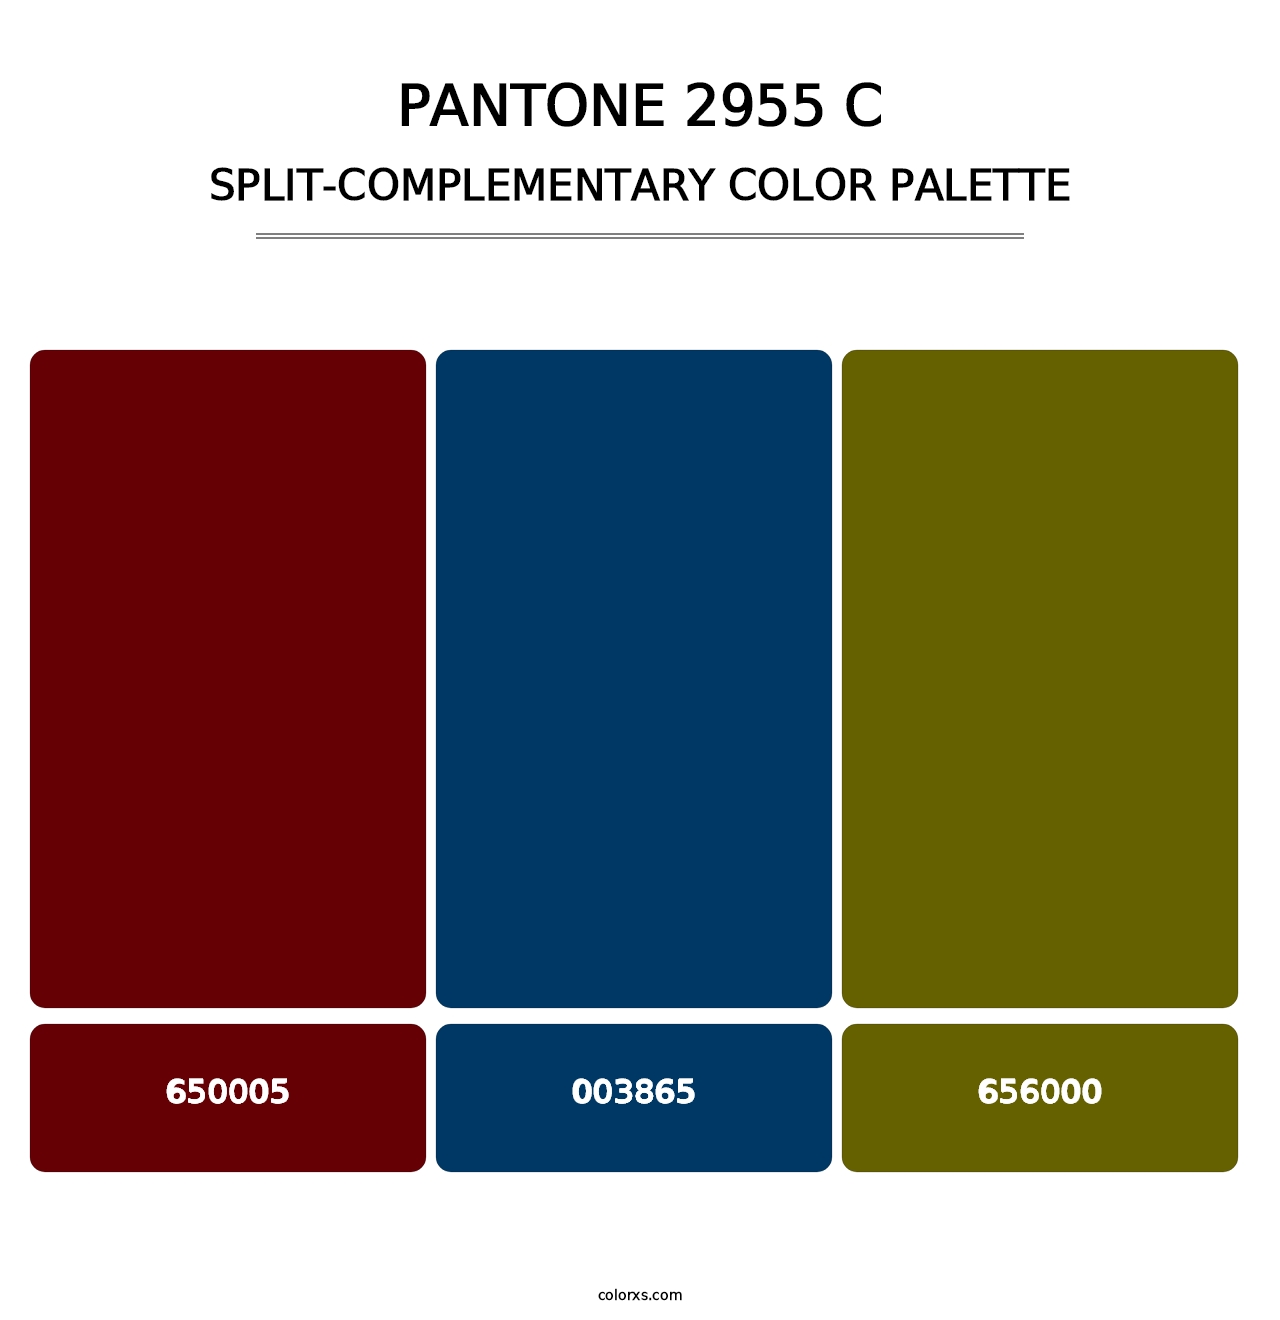 PANTONE 2955 C - Split-Complementary Color Palette